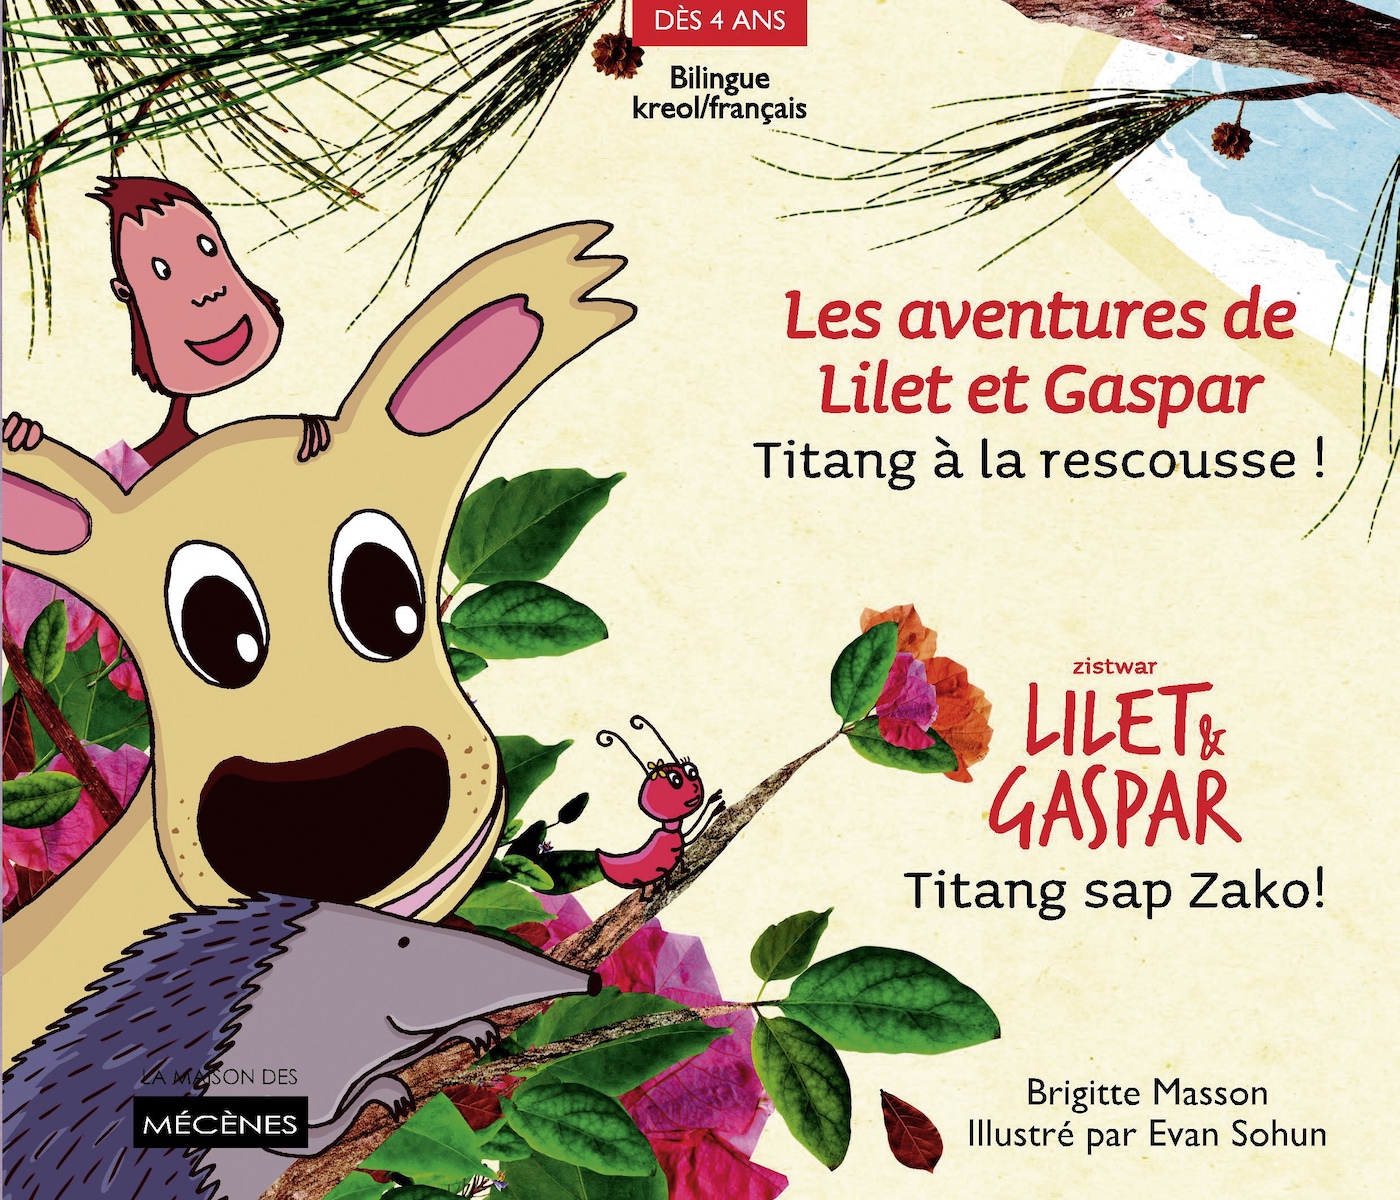 Zistwar Lilet & Gaspar - Quatrième épisode - Titang sap Zako ! - Les aventures de Lilet et Gaspar - Quatrième épisode - Titang à la rescousse !